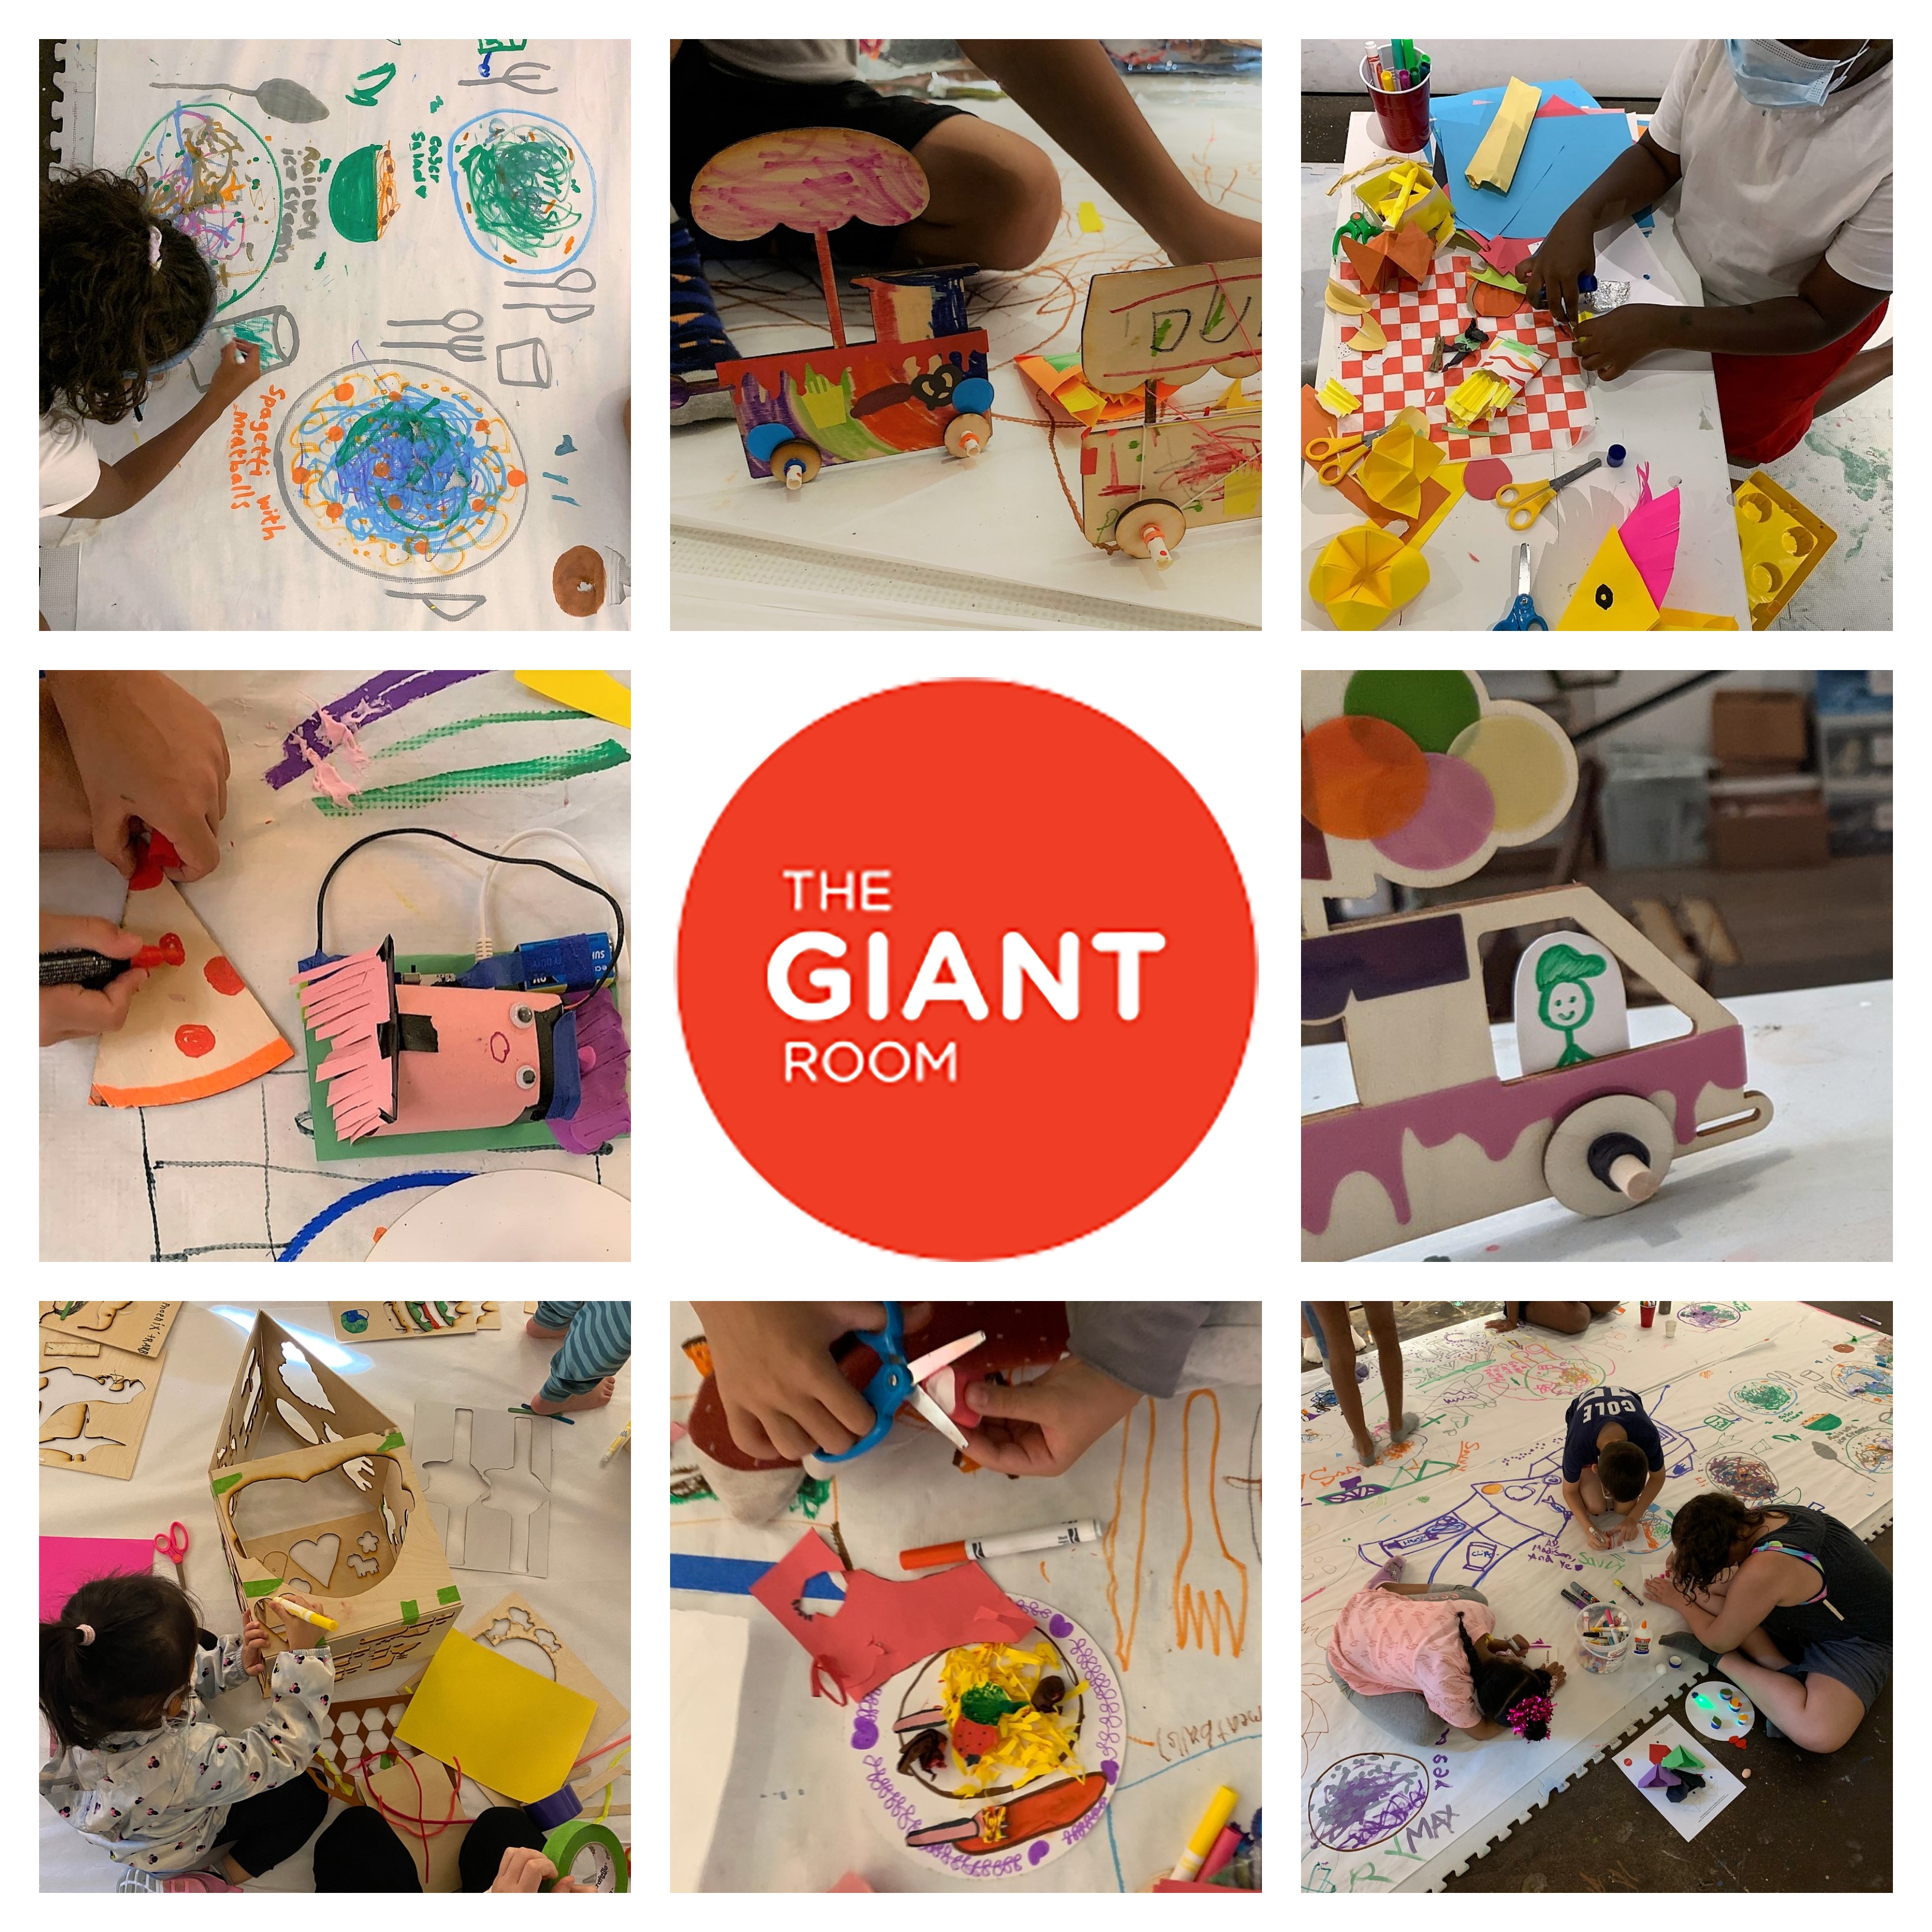 As crianças desenham e fazem artesanato em oito fotos em torno de um logotipo de círculo vermelho que diz: The Giant Room.